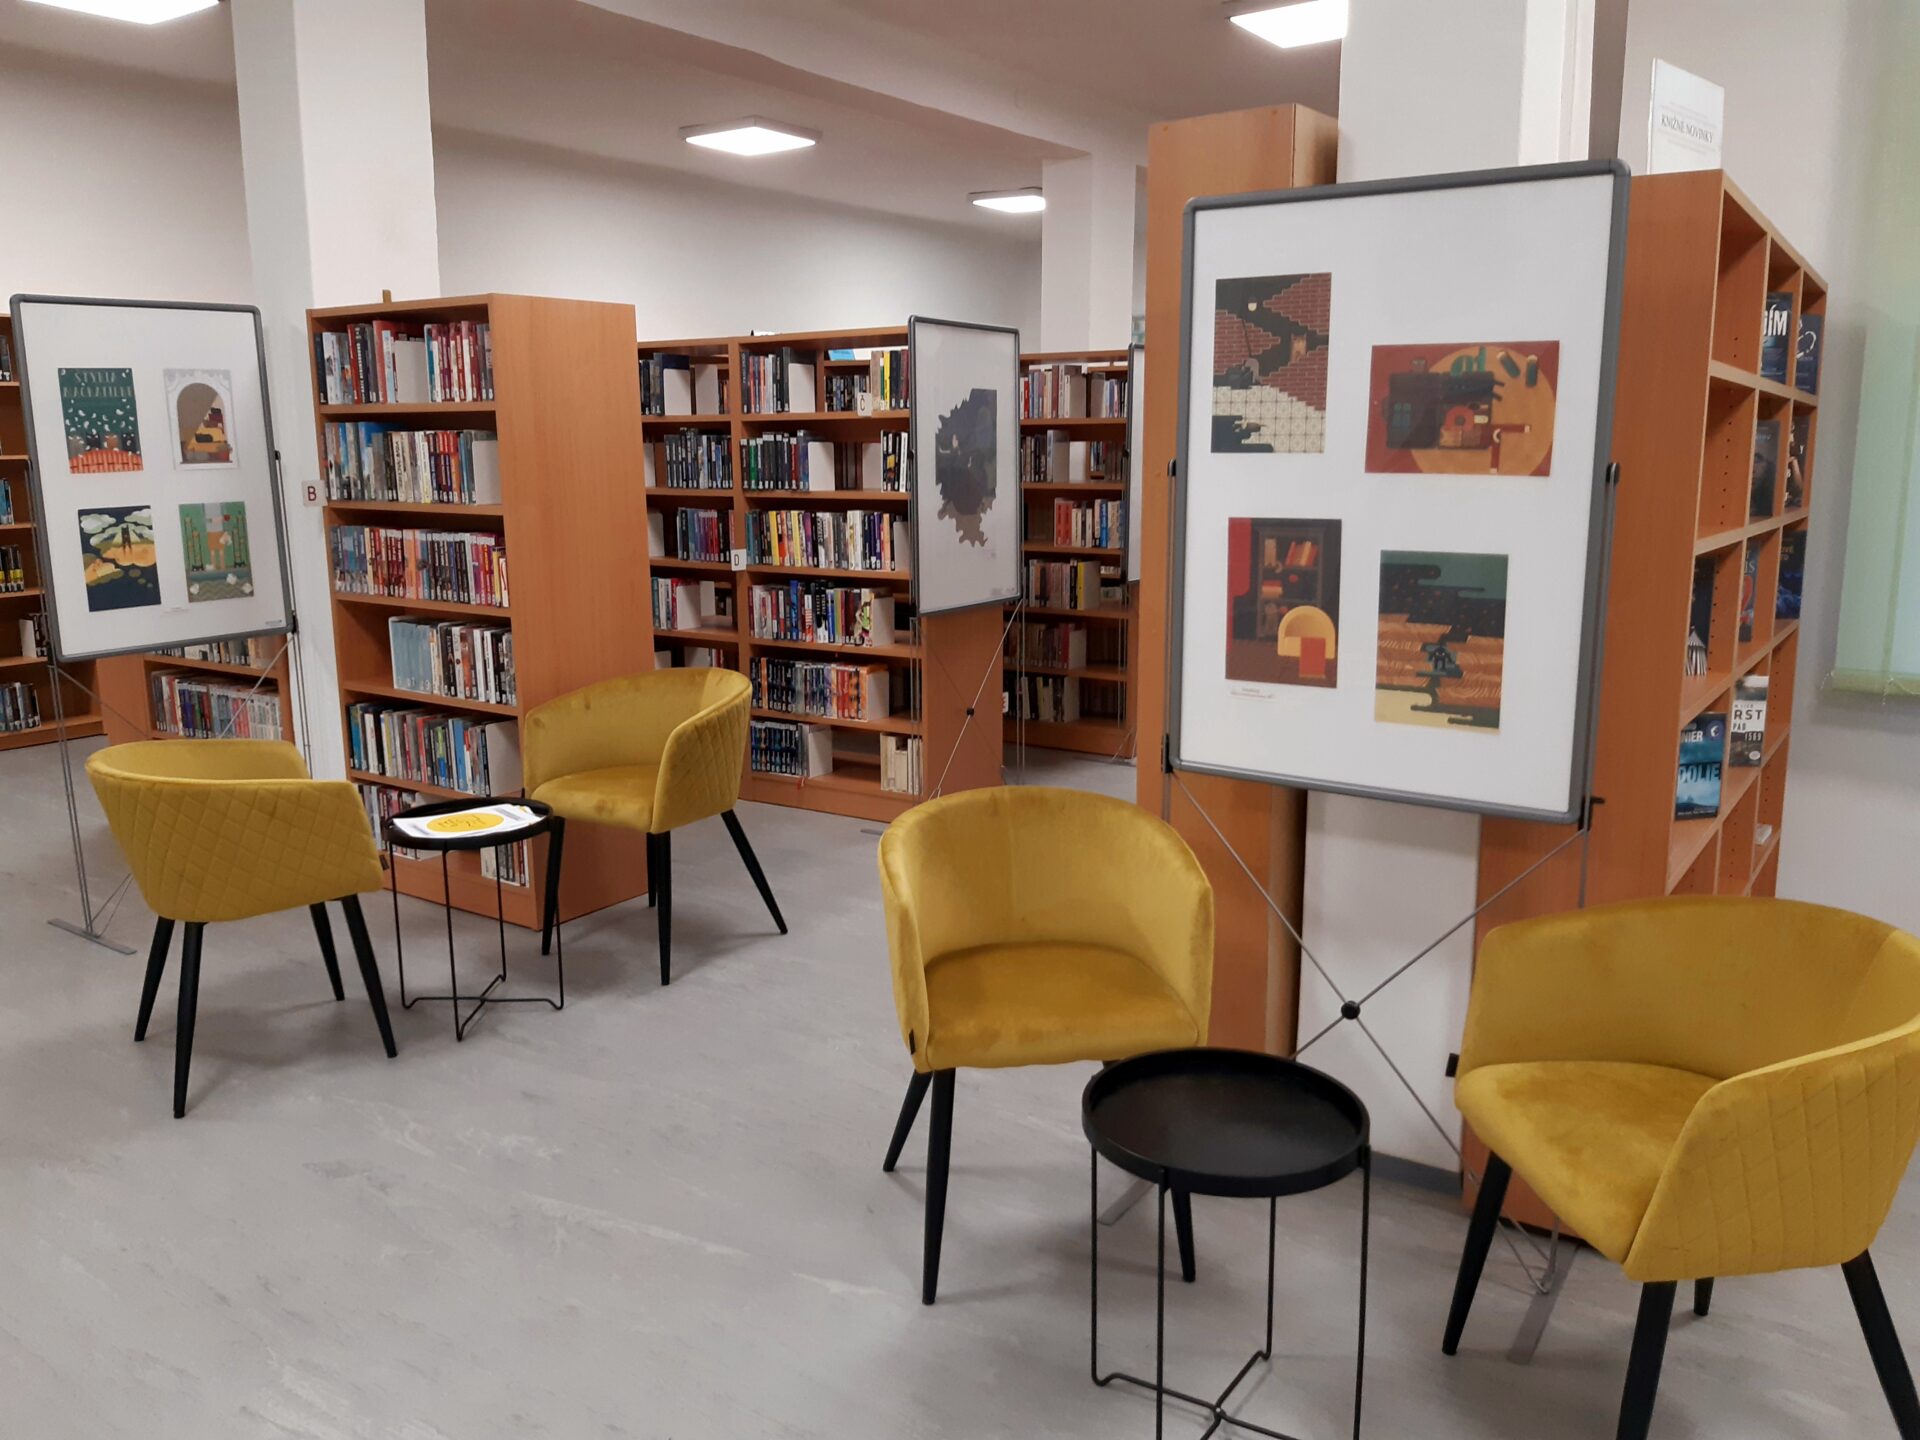 Obyvatelia Šace dostanú modernú knižnicu. VKJB ponúka dobré miesto pre dobré knihy